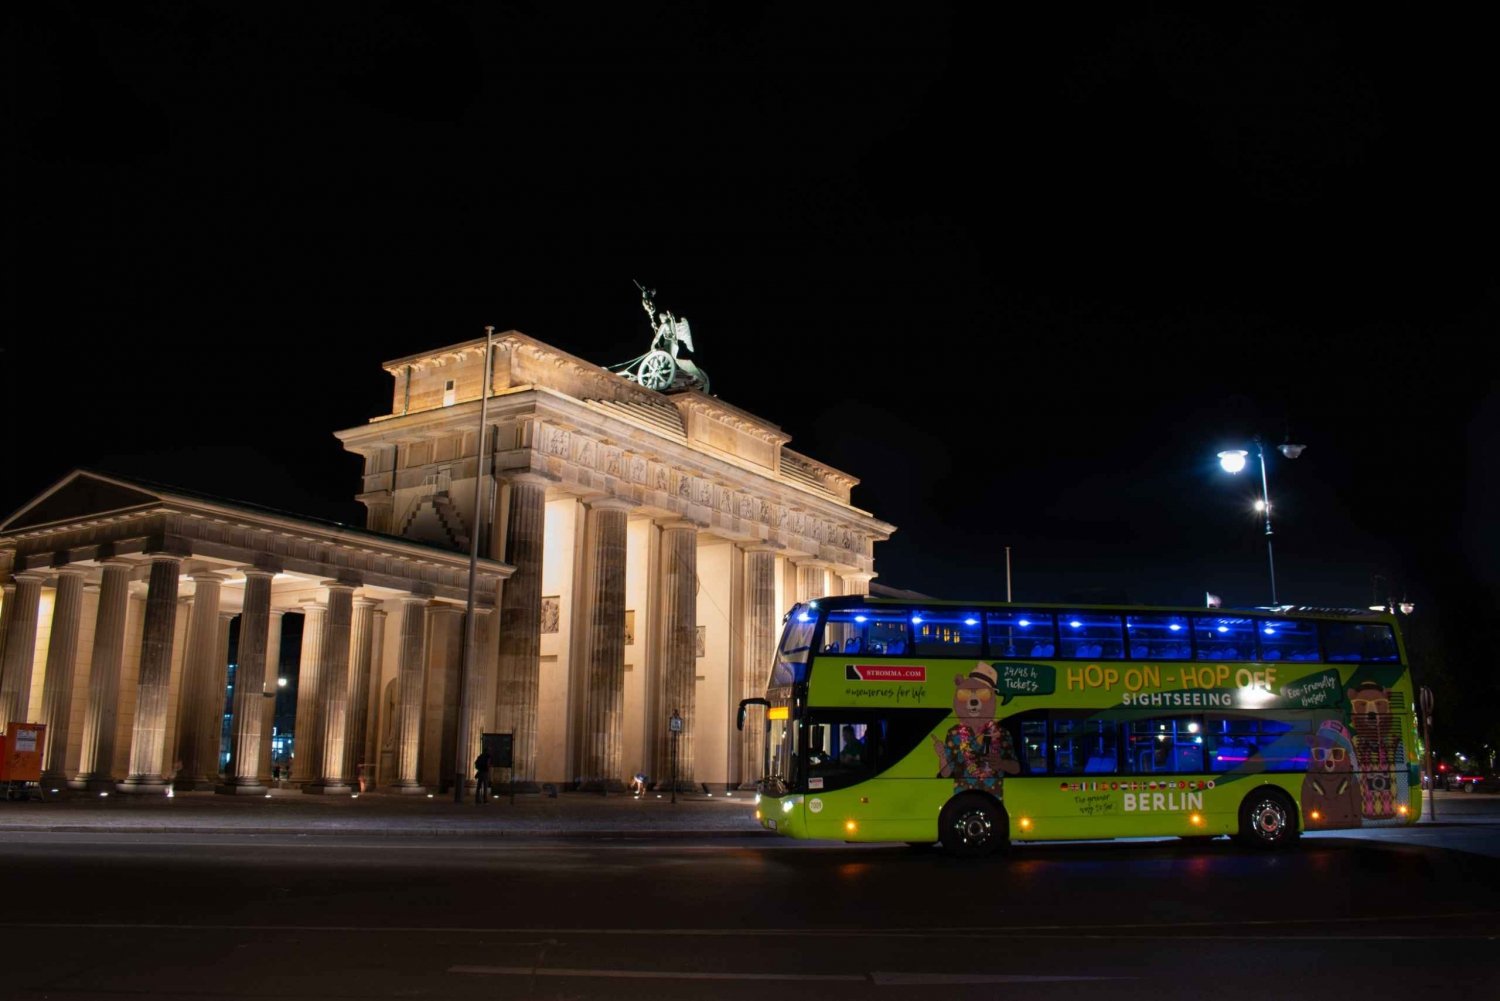 Berlín: Tour turístico nocturno en autobús con comentarios en directo